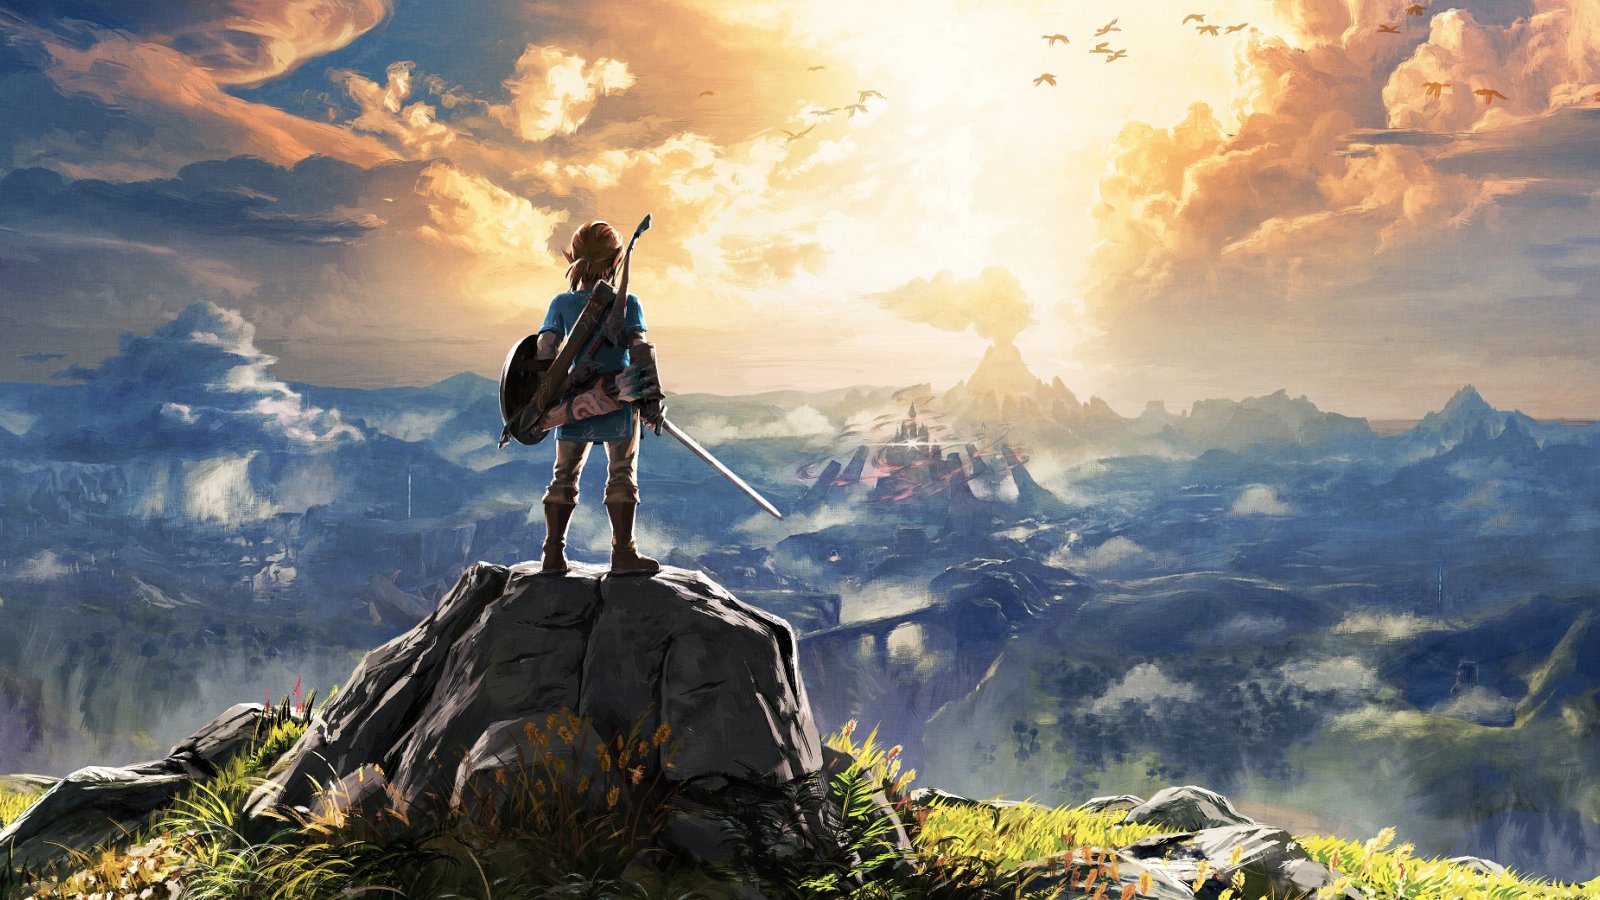 The Legend of Zelda: il film live action è stato annunciato da Nintendo in via ufficiale - Multiplayer.it